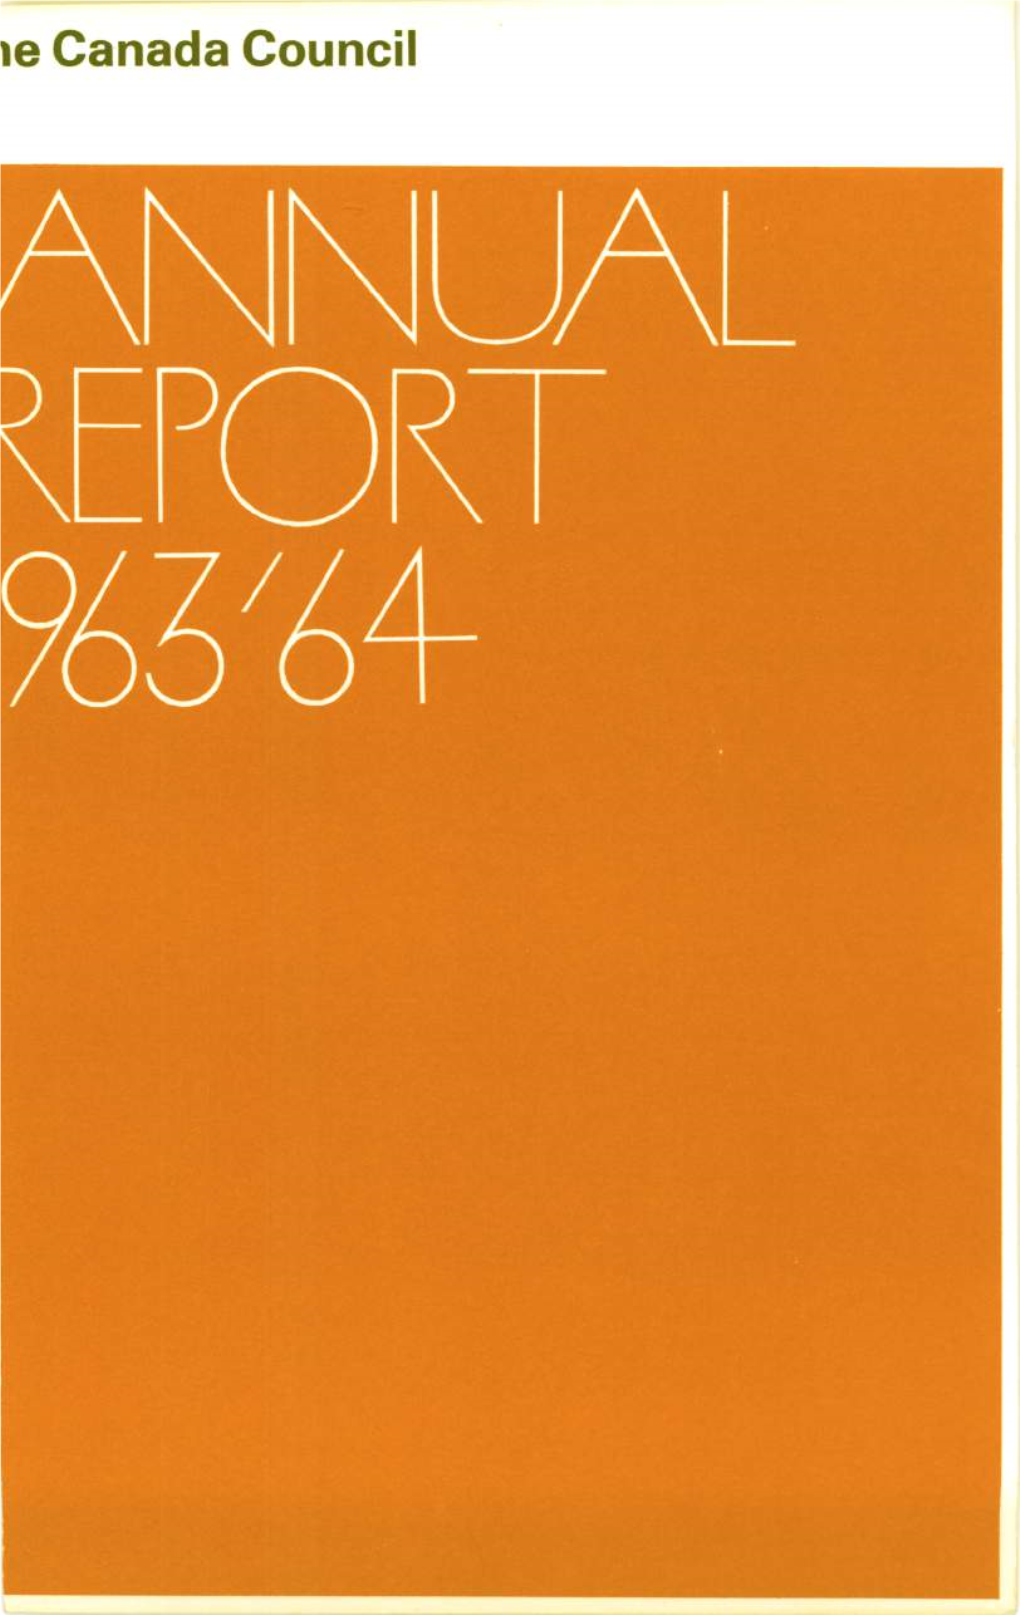 1963-64-Annual-Report.Pdf